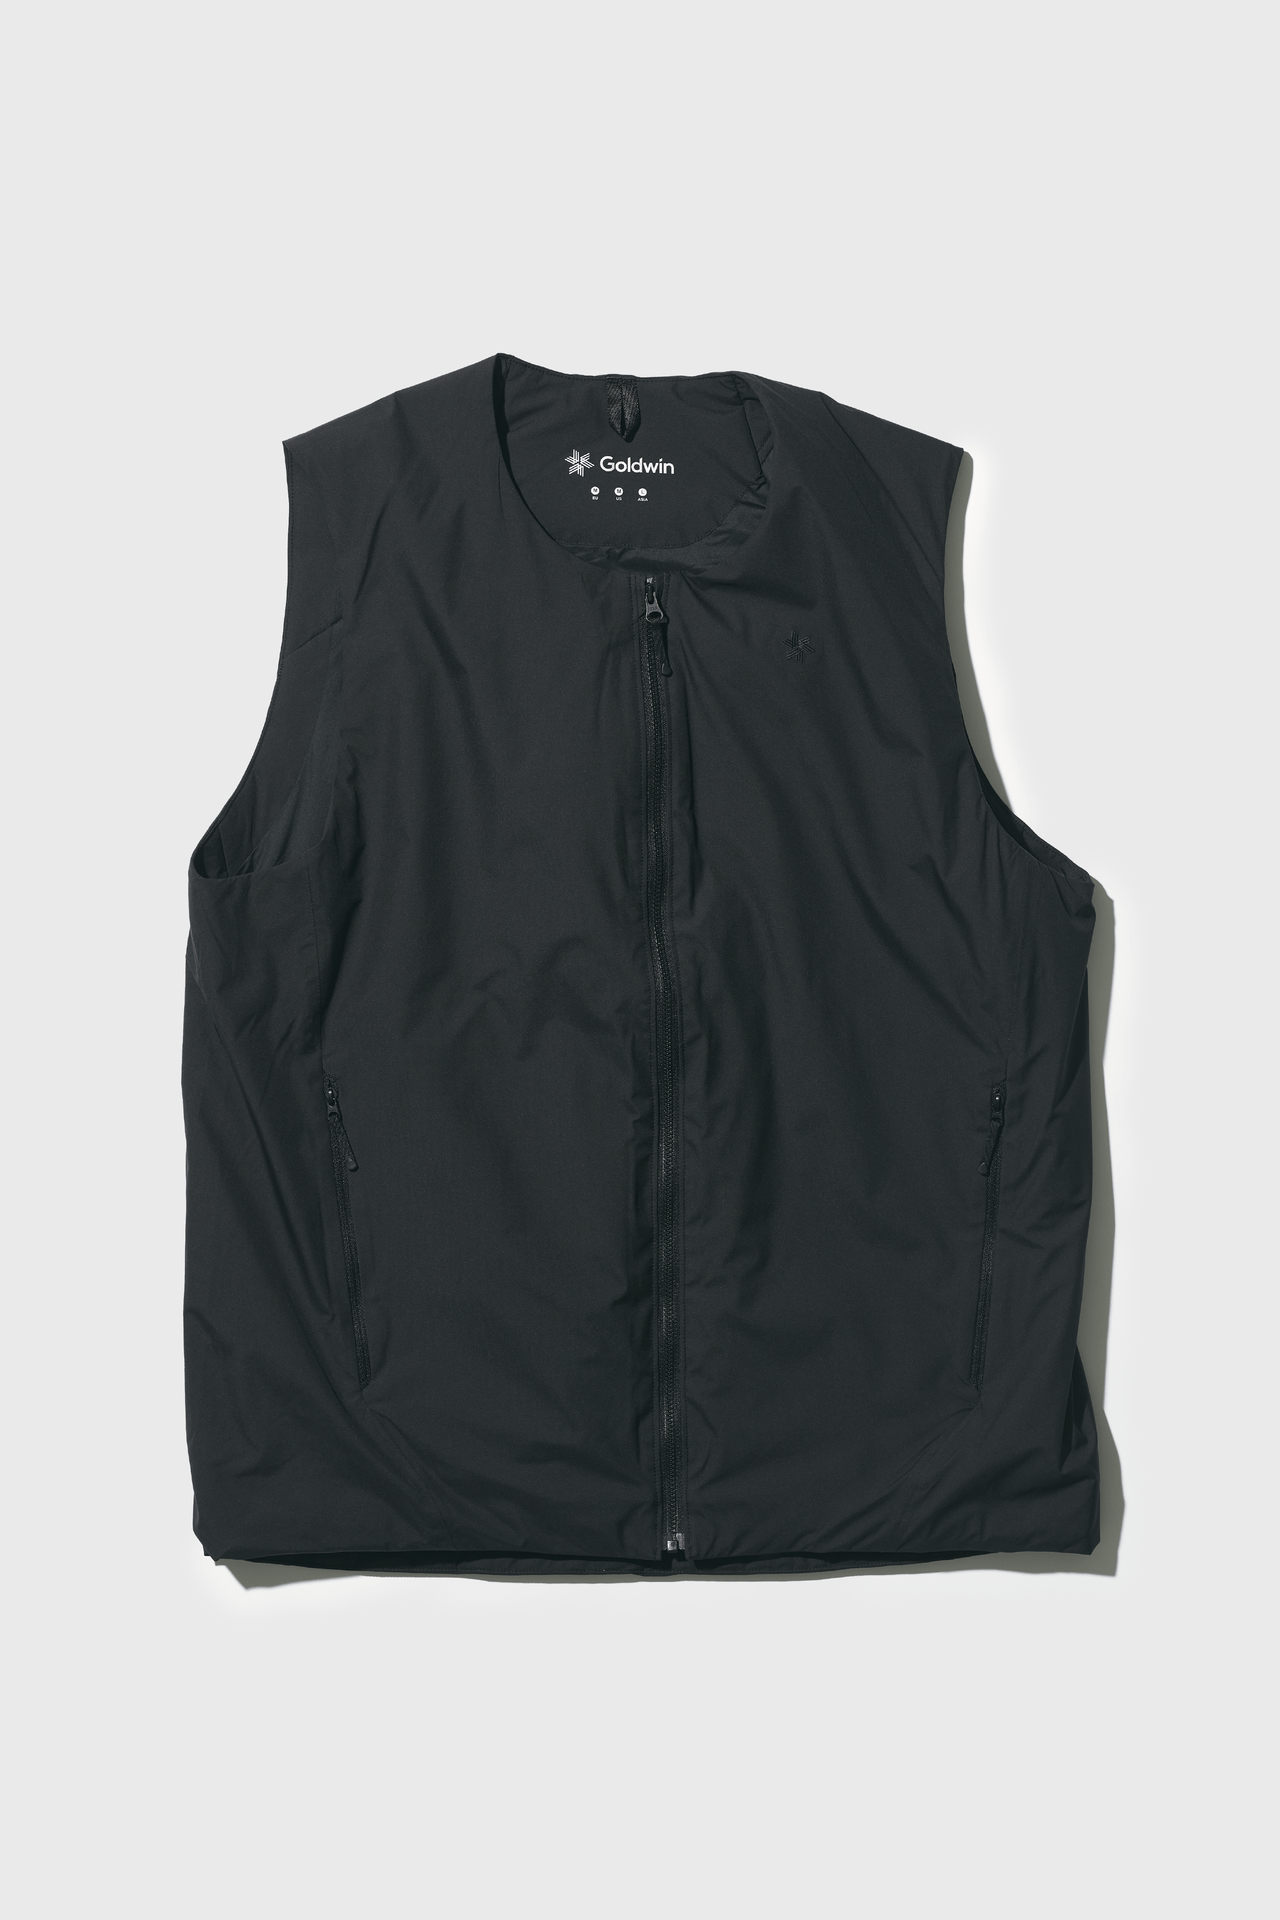 GORE-TEX INFINIUM Puffy Vest | 価格：￥36,300 サイズ：XS、S、M、L、XL カラー：ブラック、クレイベージュ